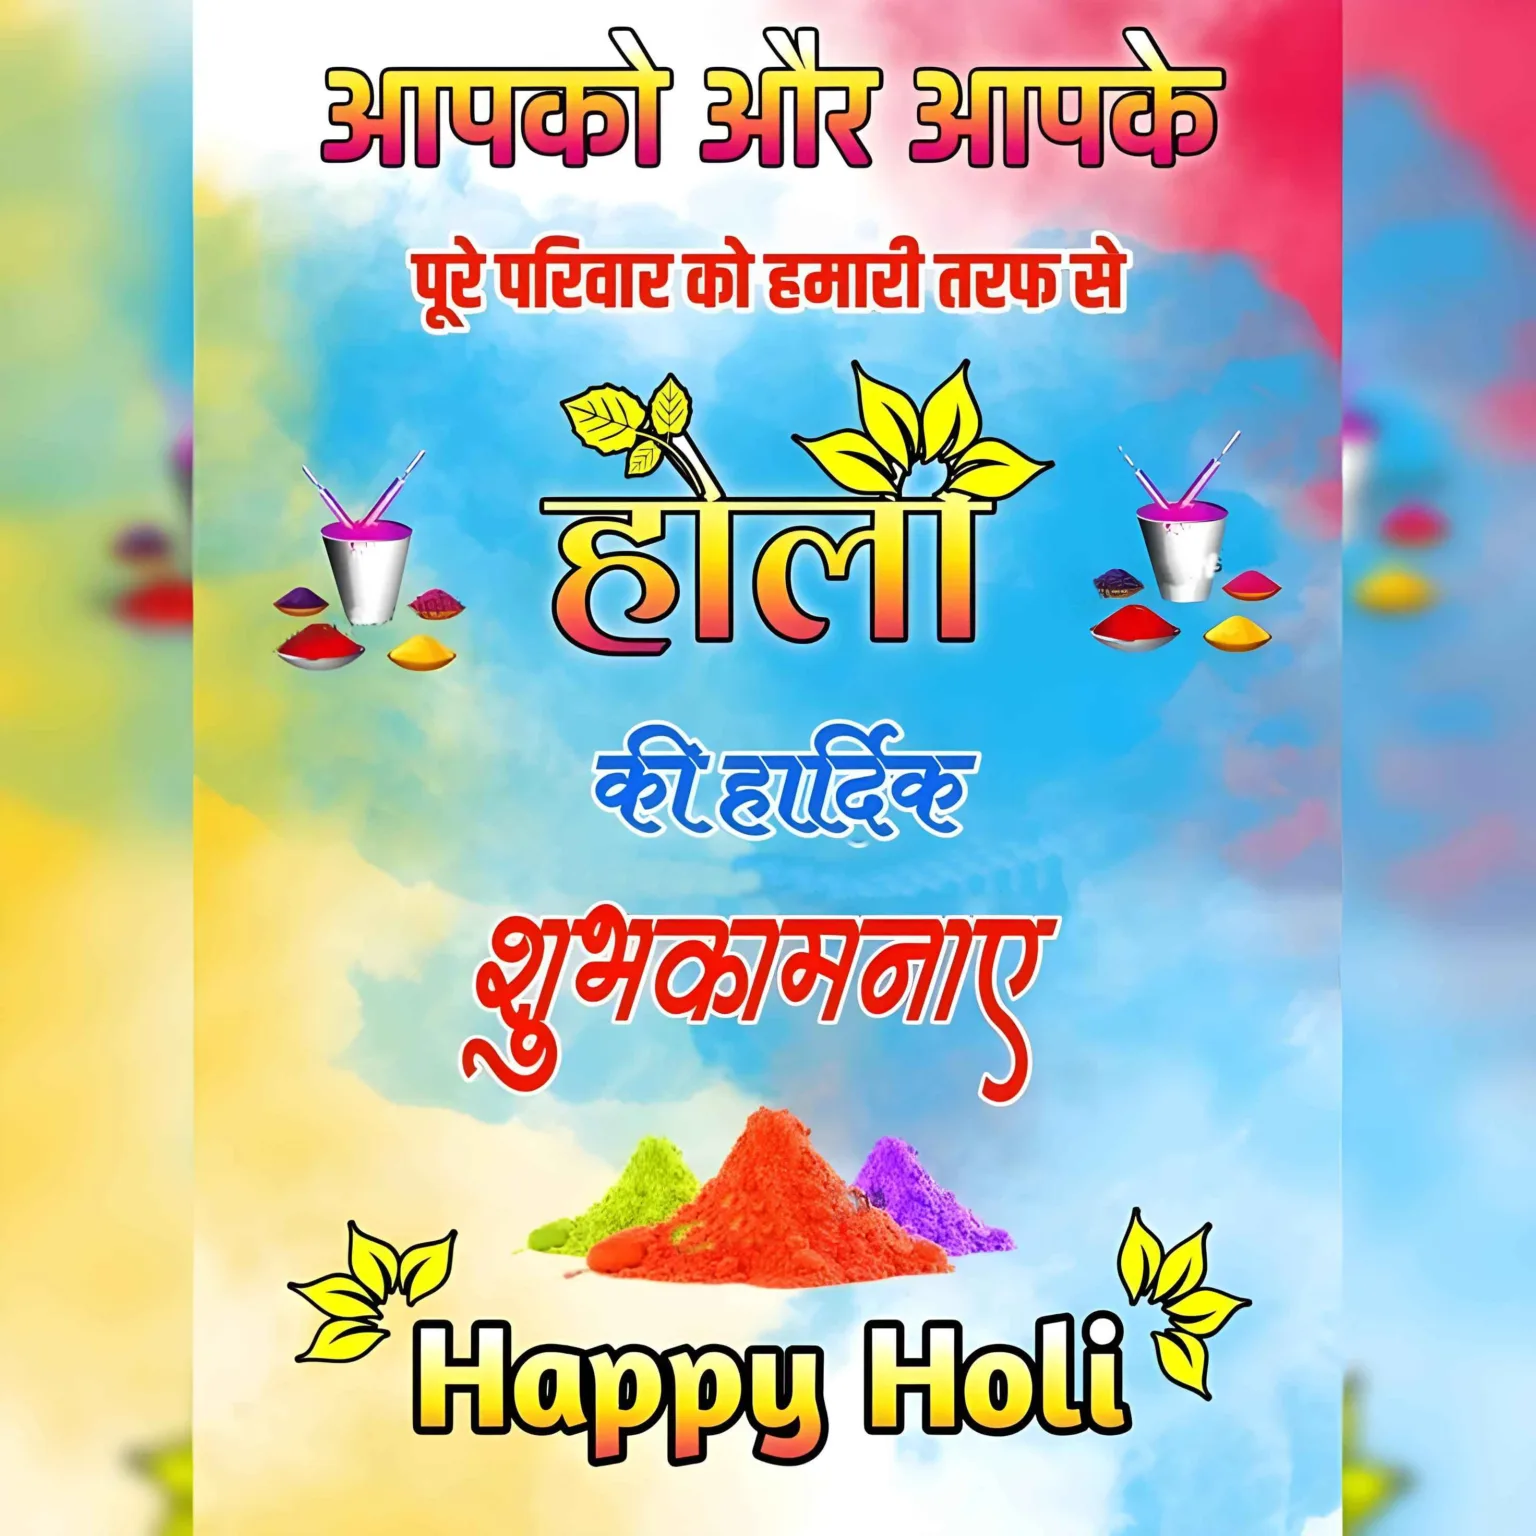 होली की हार्दिक शुभकामनाएं Happy Holi Wishes Full HD Image